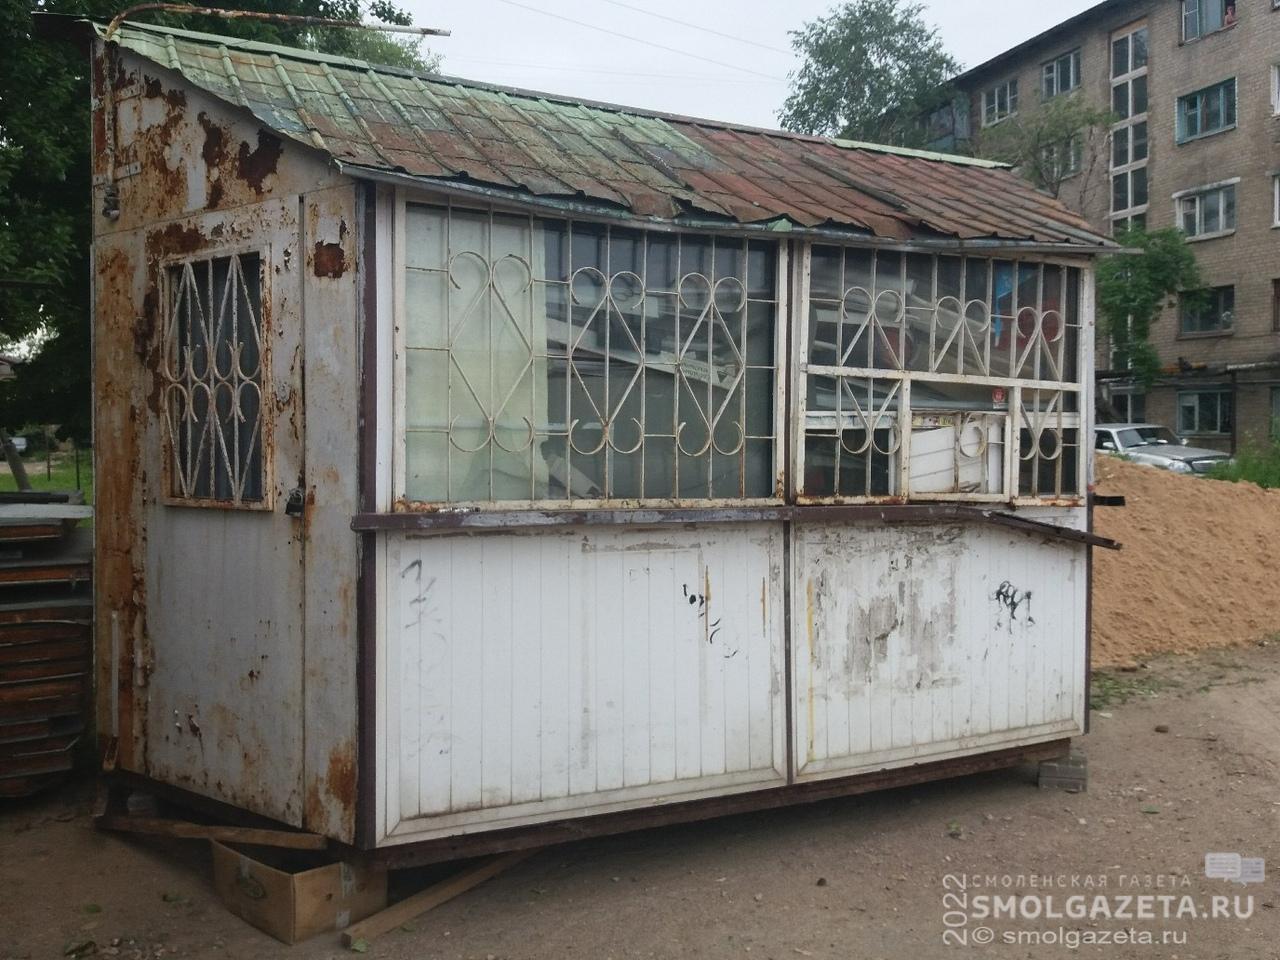 В Заднепровском районе Смоленска снесут незаконно установленный киоск